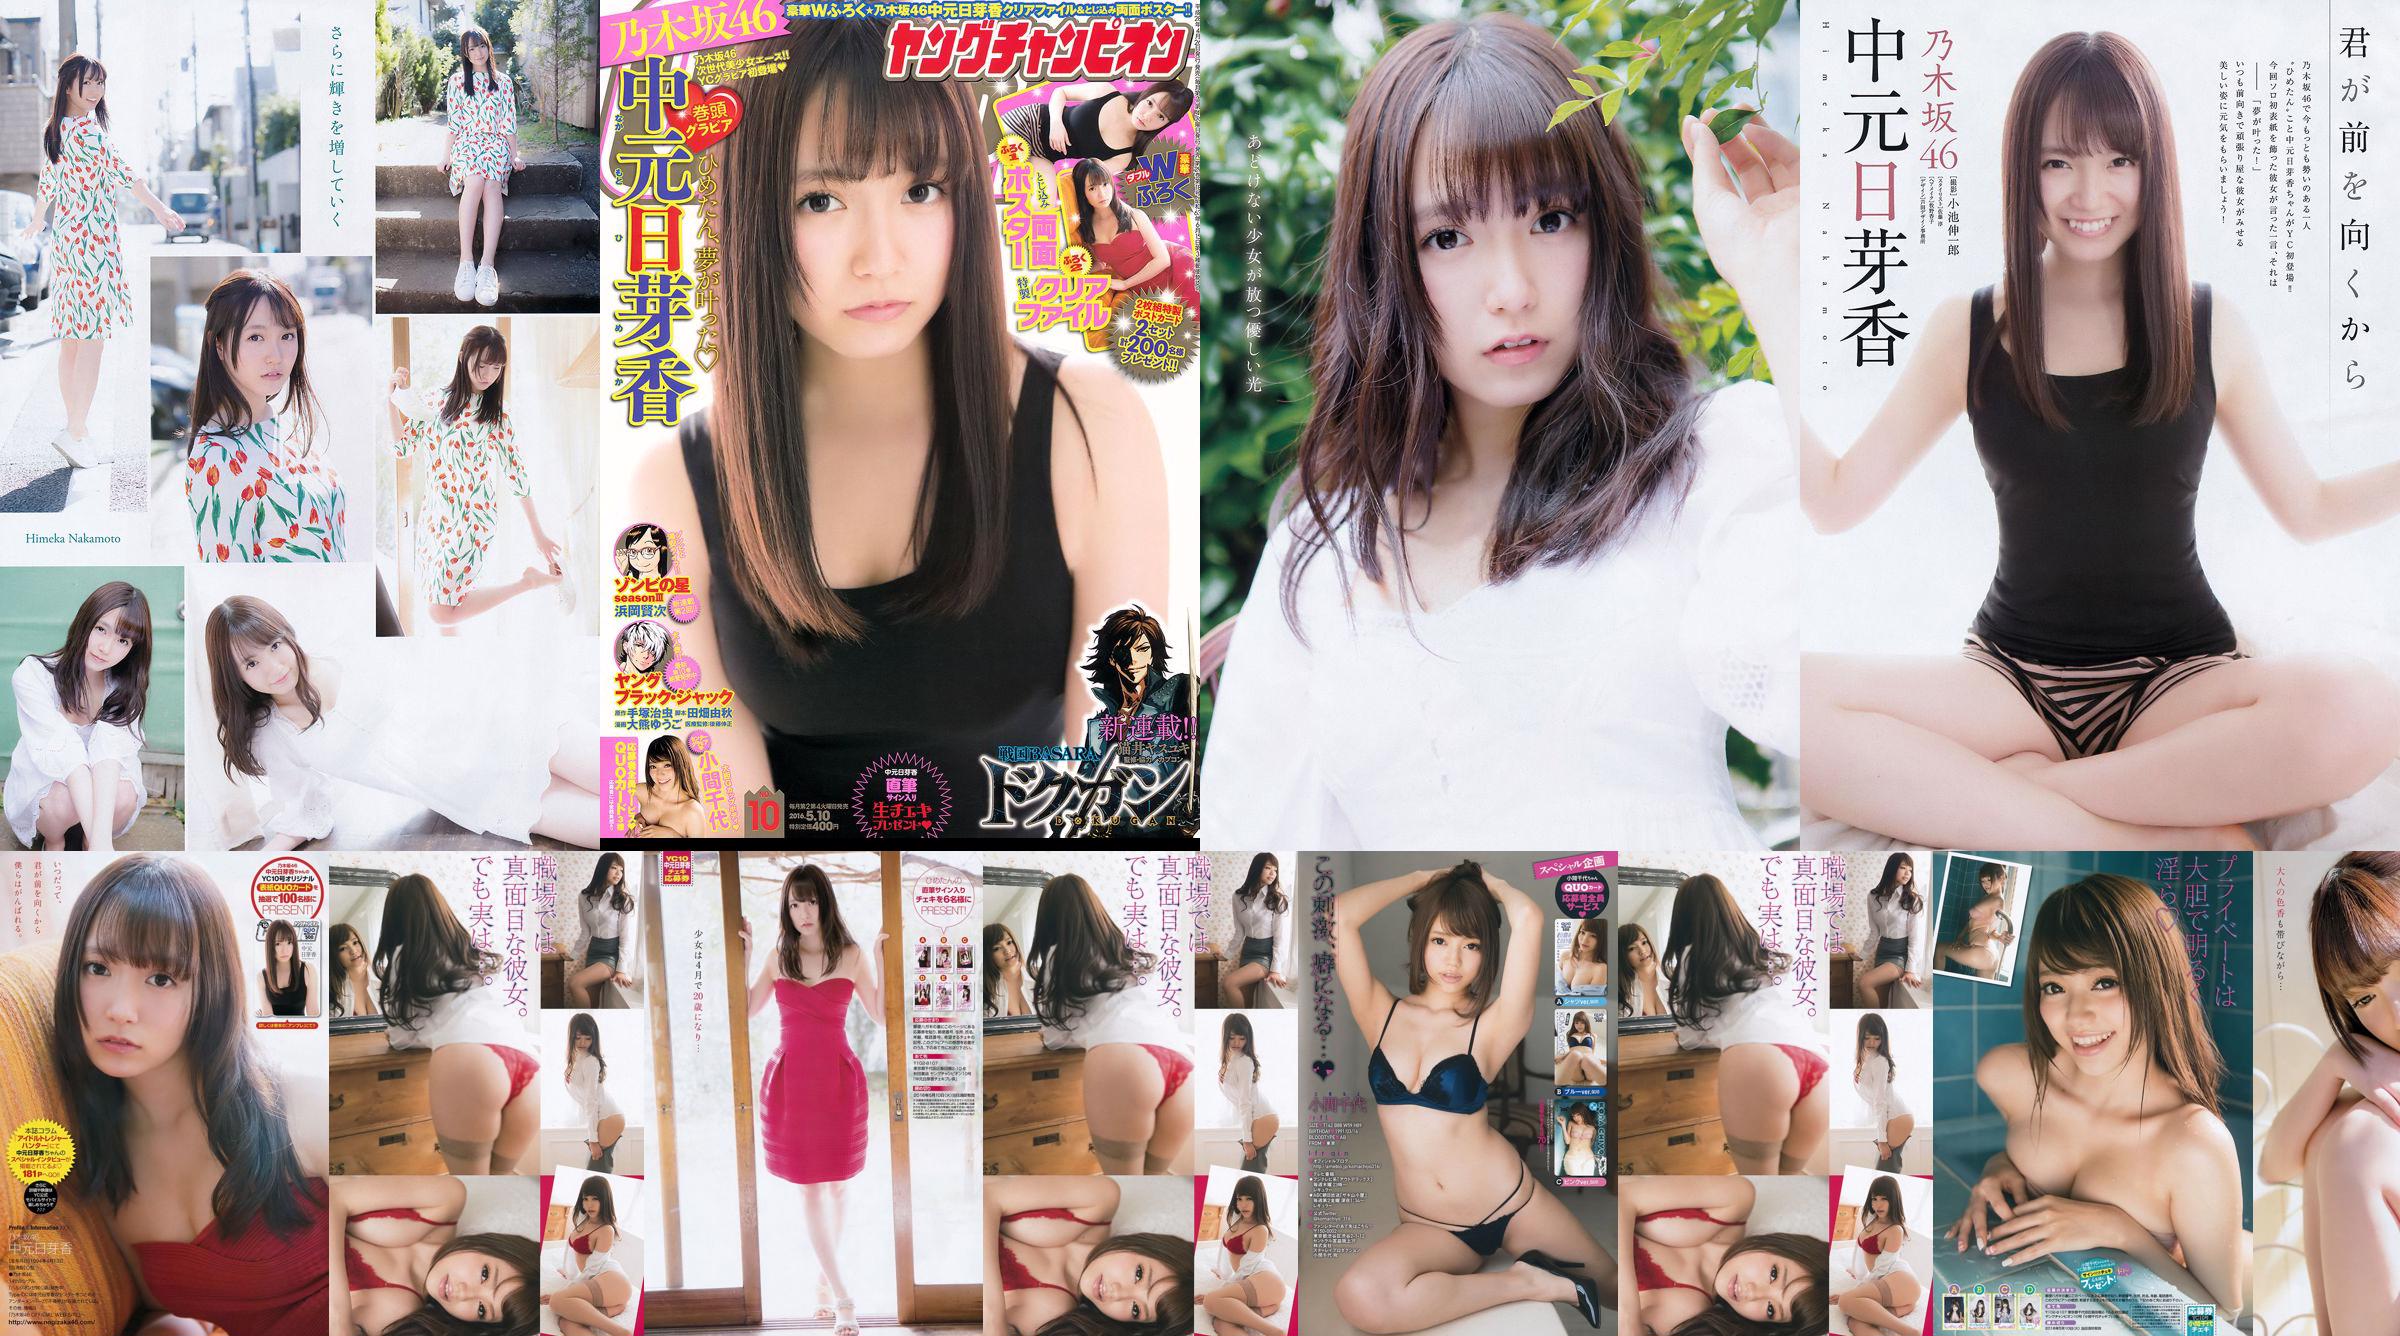 [Jovem campeão] Nakamoto Nichiko Koma Chiyo 2016 No.10 Photo Magazine No.519a34 Página 5